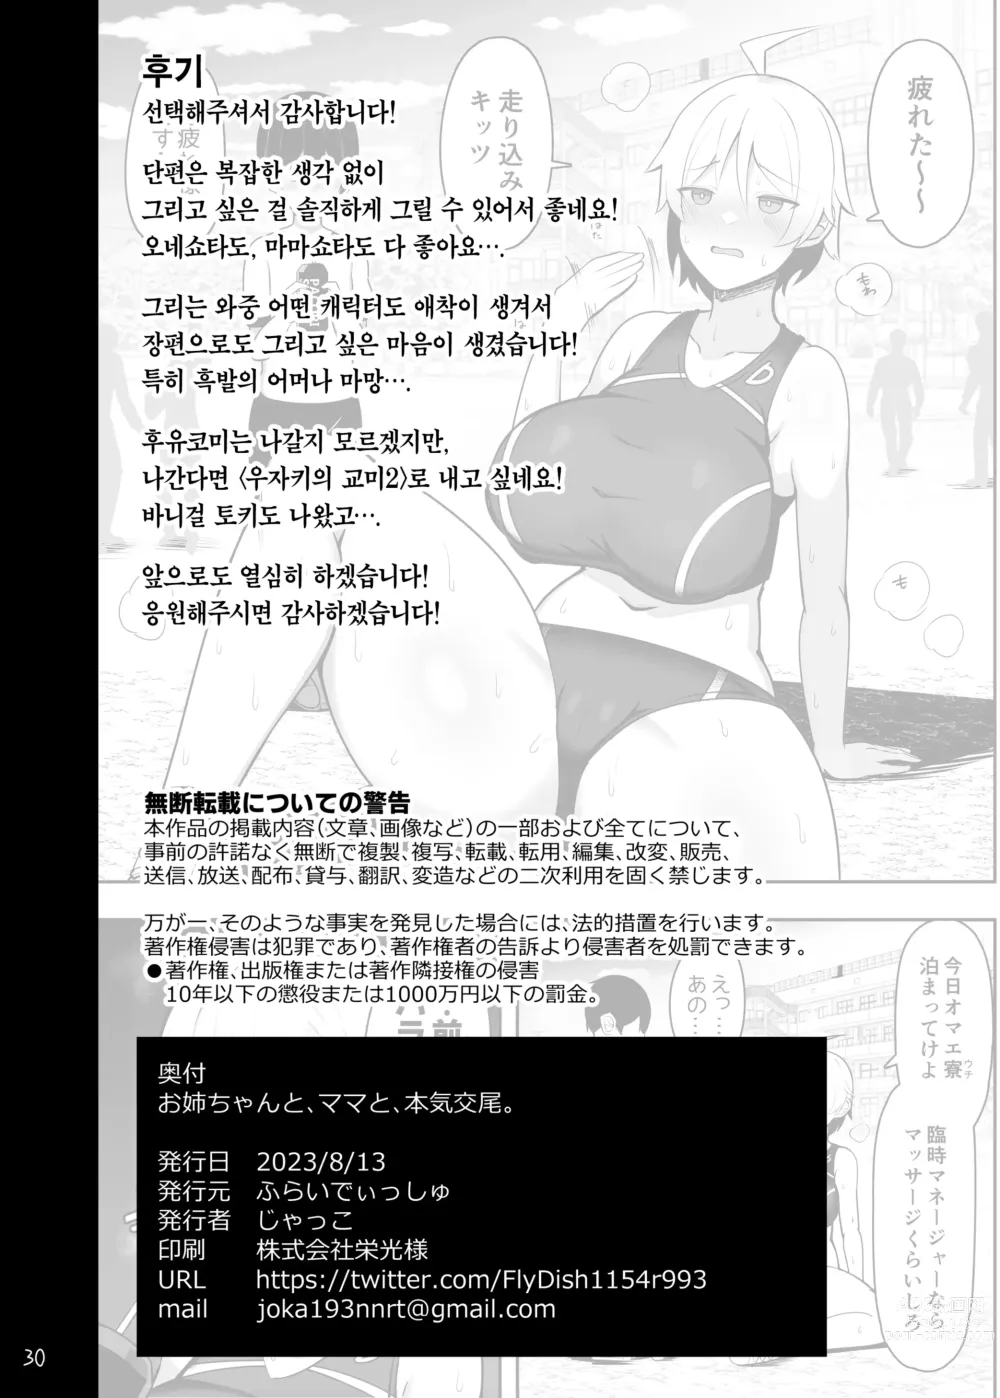 Page 87 of doujinshi 누나와 엄마와 진심교미